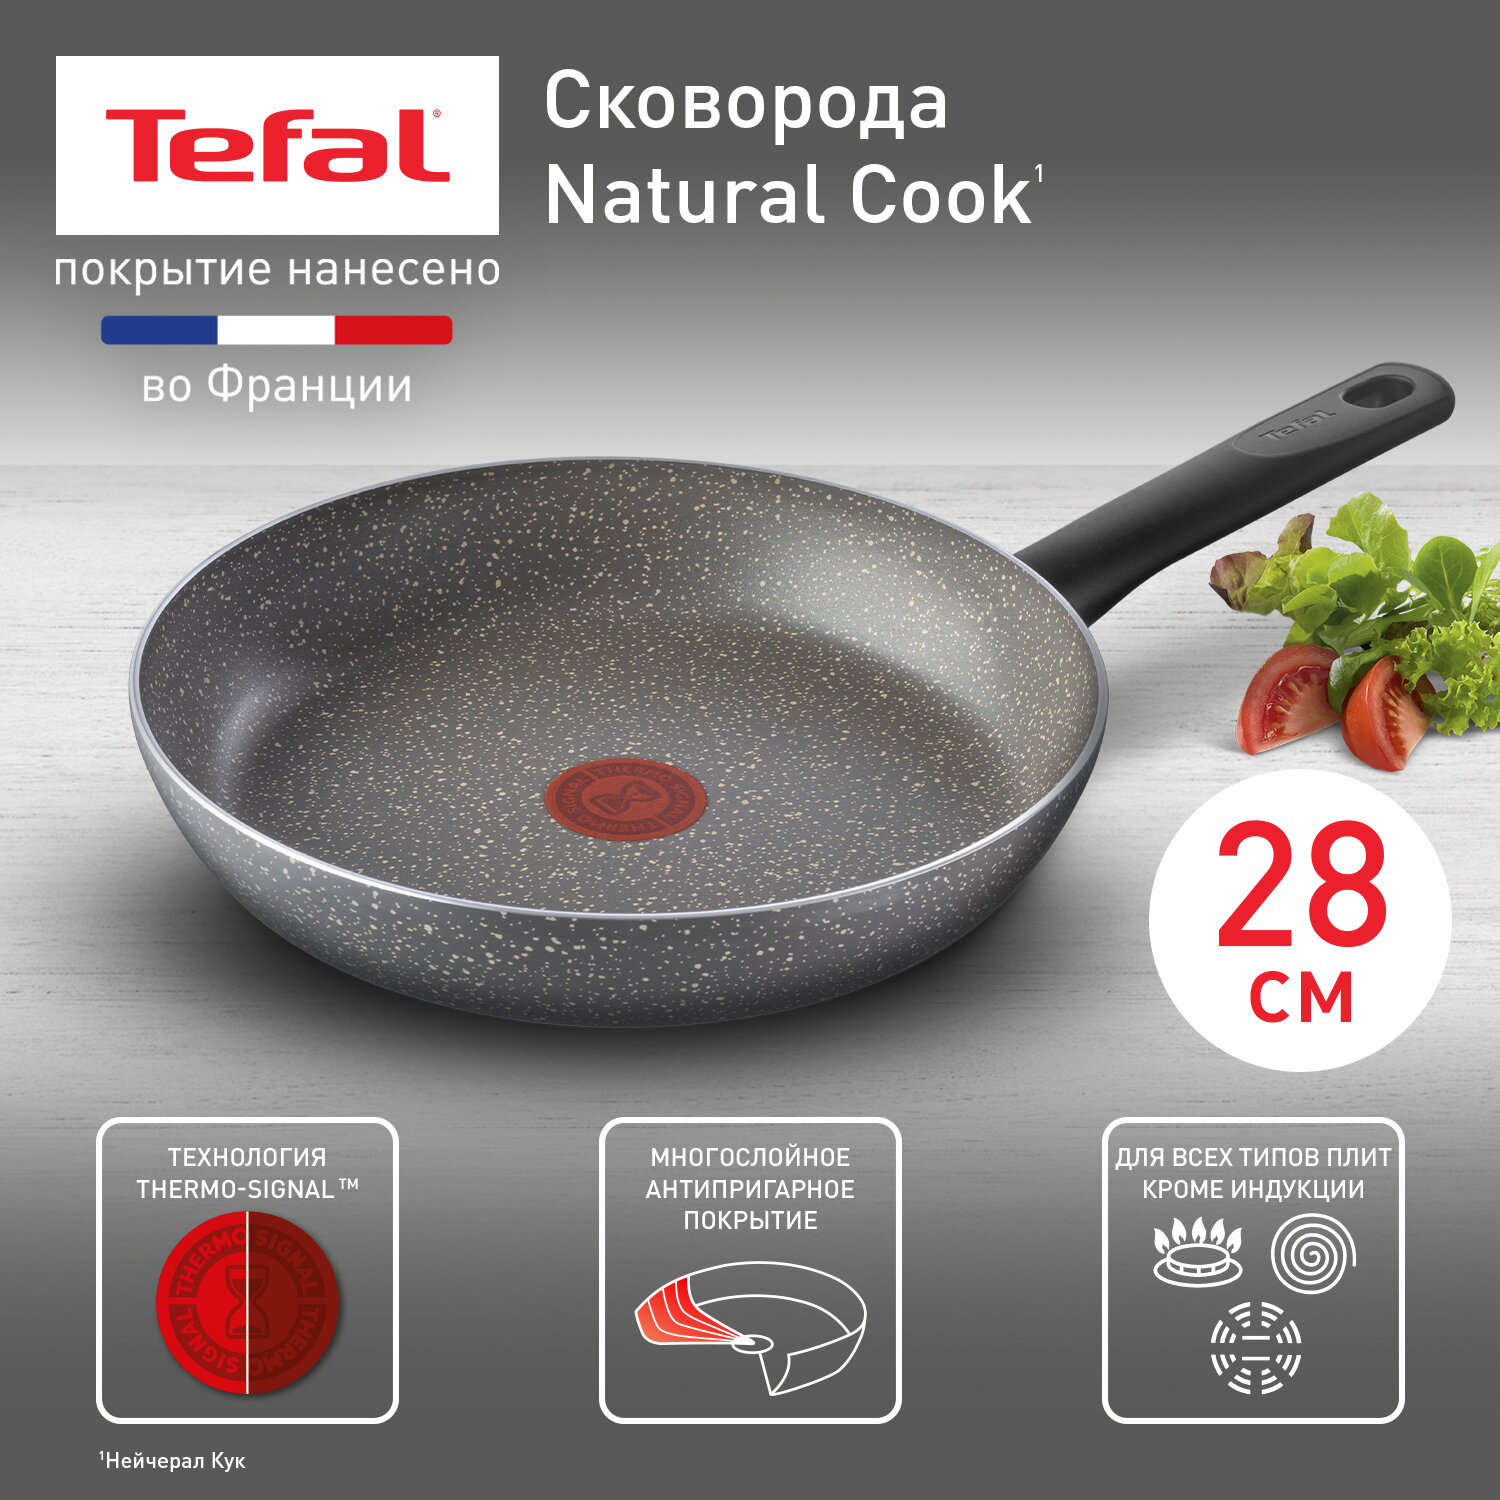 Сковорода Tefal Natural Cook 04211128, диаметр 28 см, с индикатором температуры и антипригарным покрытием, для газовых, электрических плит